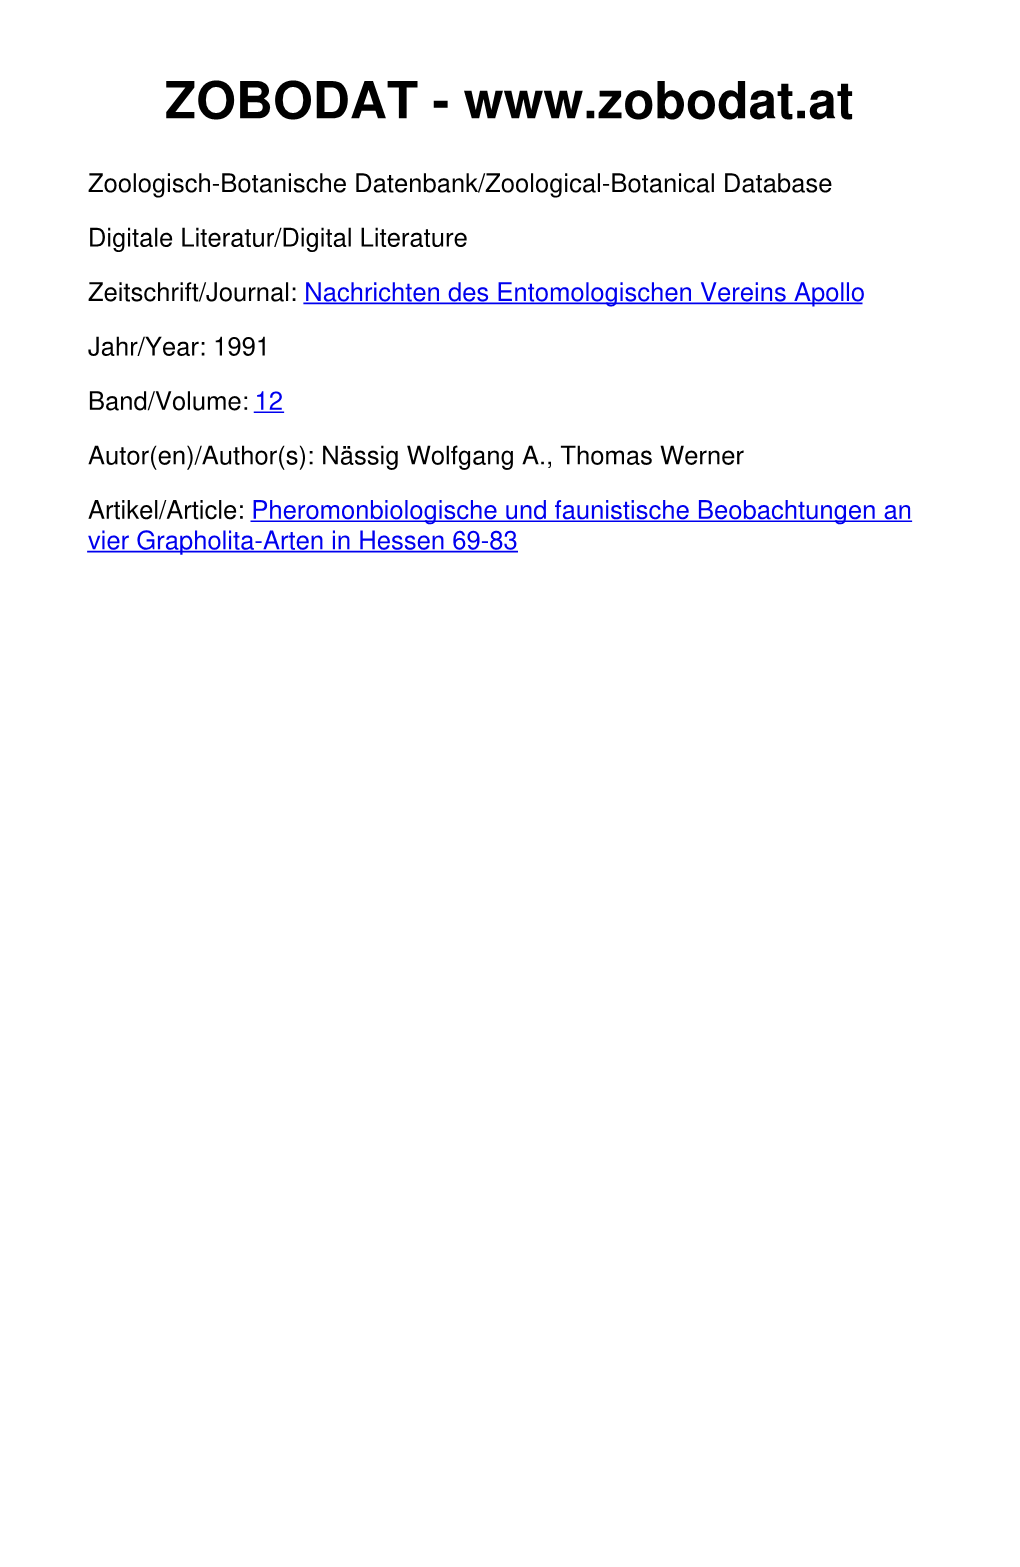 Pheromonbiologische Und Faunistische Beobachtungen an Vier Grapholita-Arten in Hessen 69-83 ©Entomologischer Verein Apollo E.V